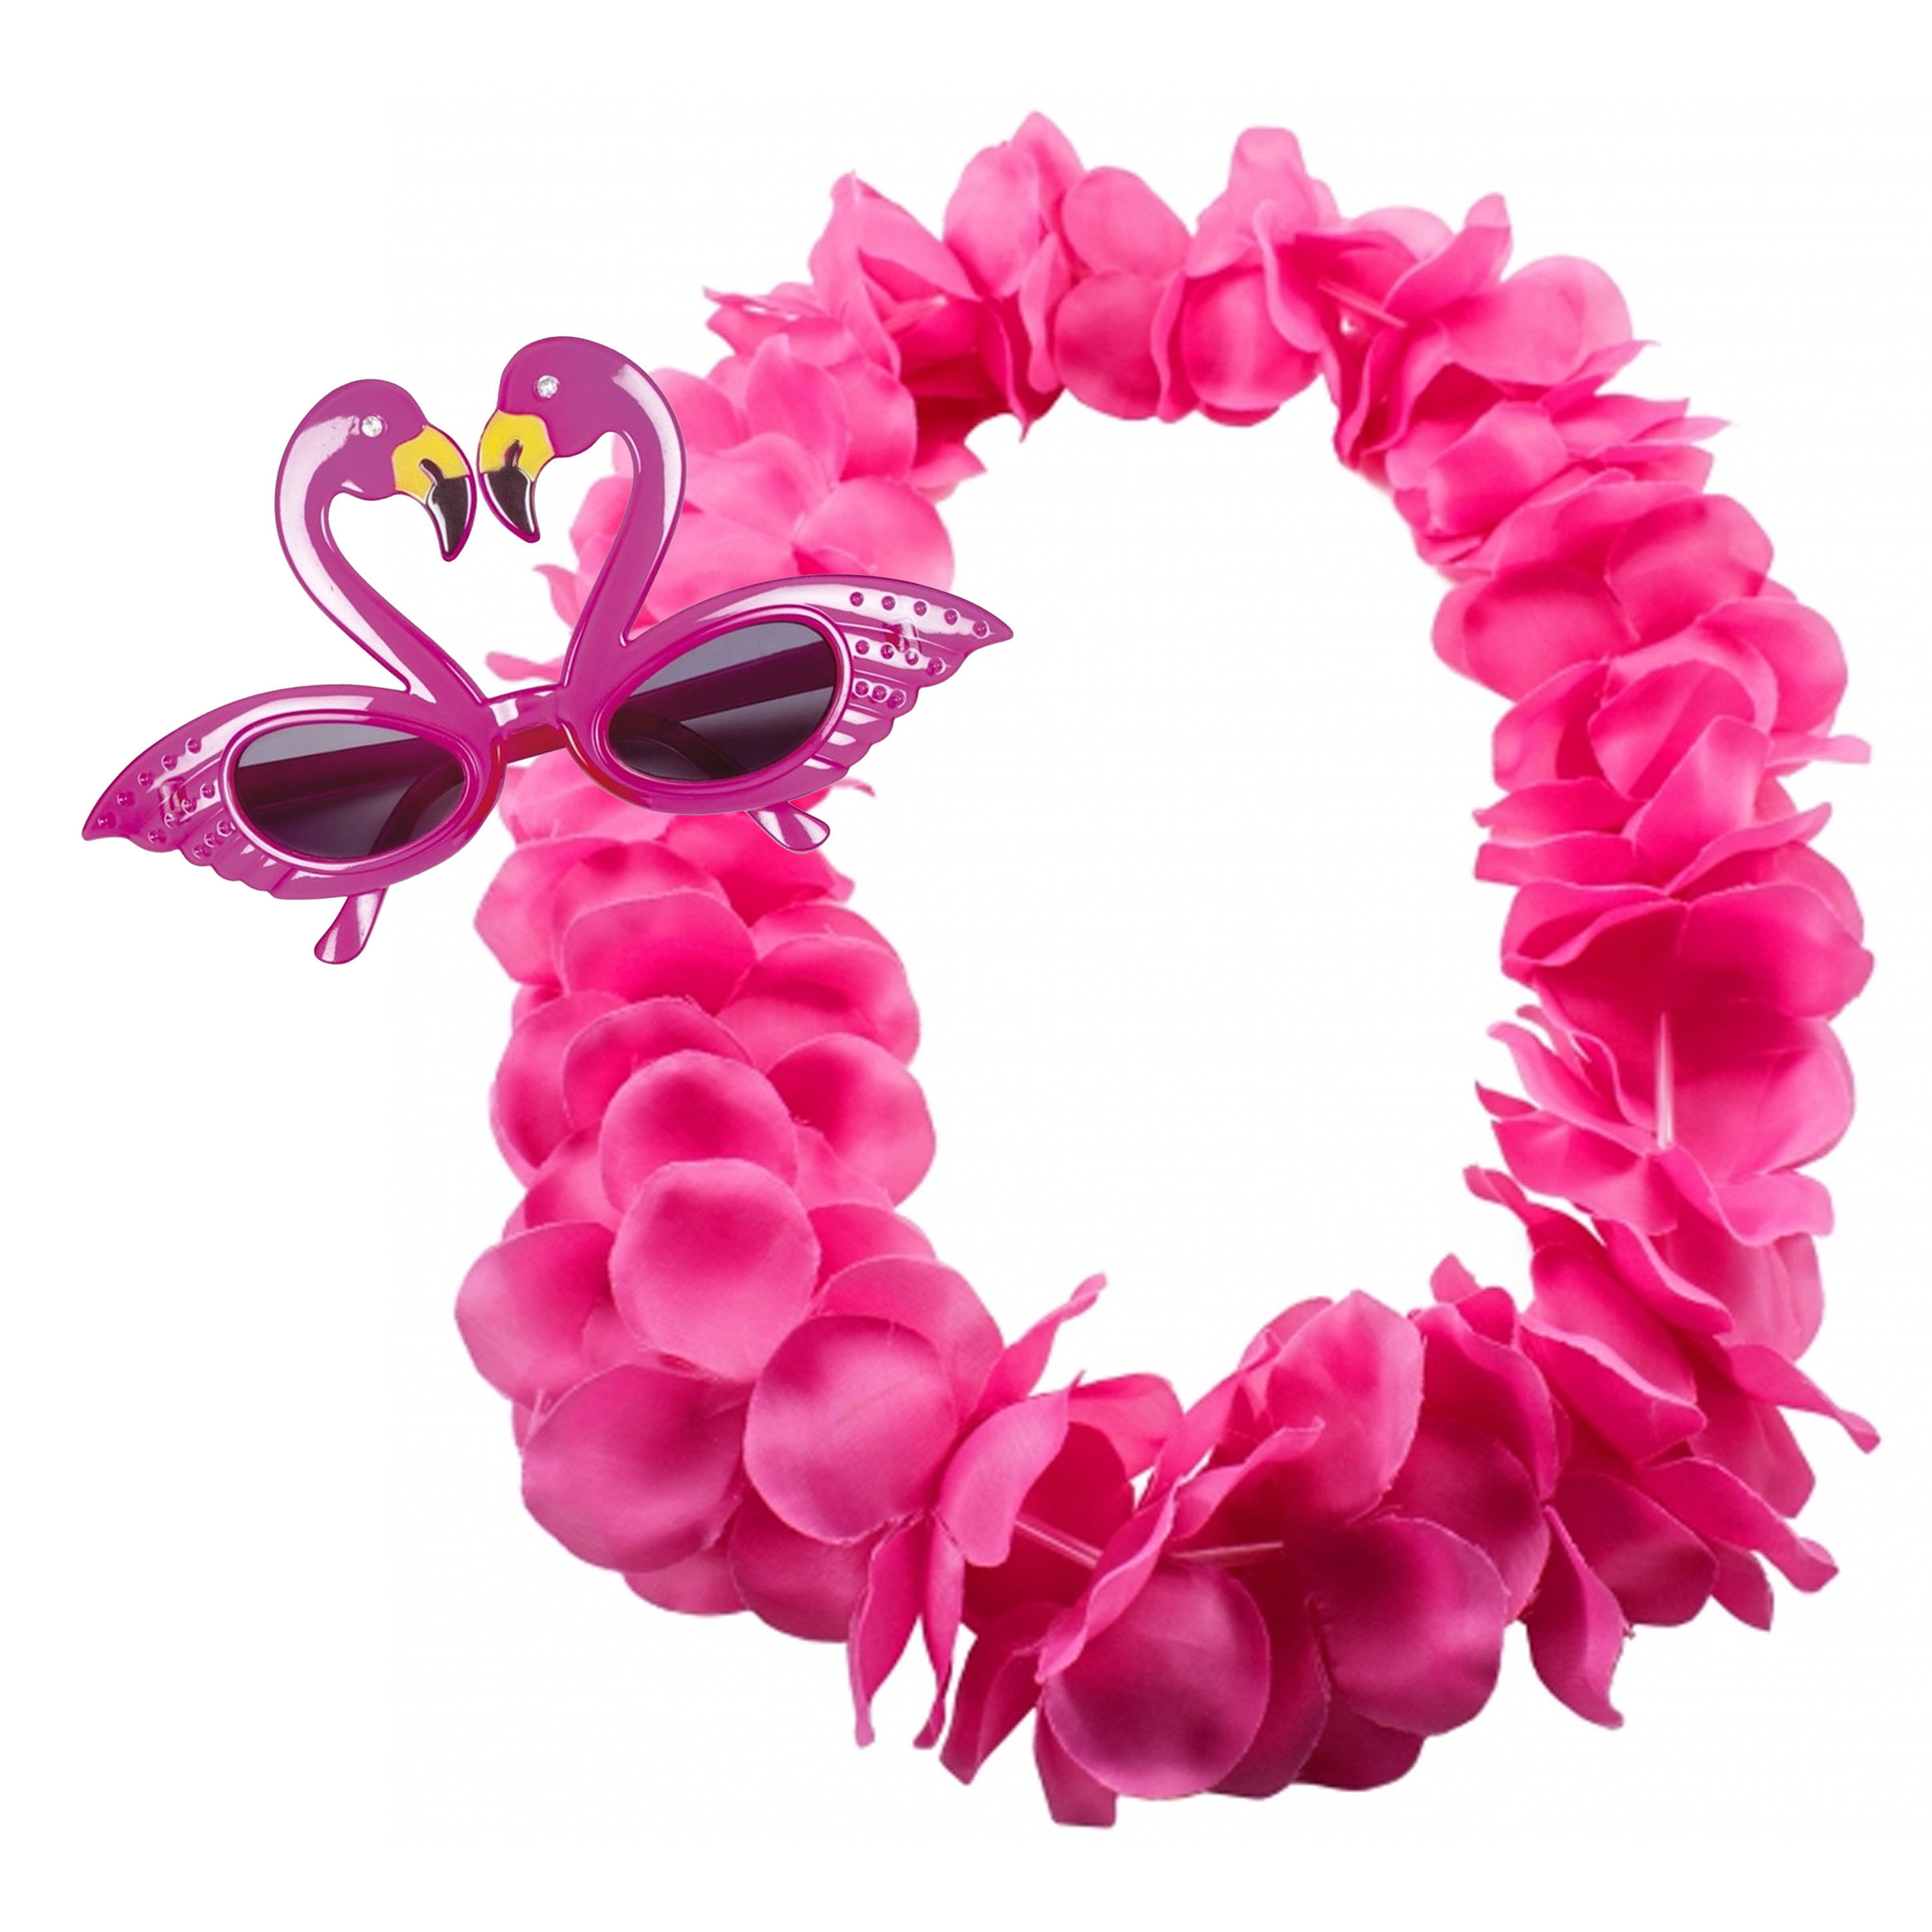 Tropische Hawaii party verkleed accessoires set - Flamingos zonnebril - bloemenkrans fuchsia roze